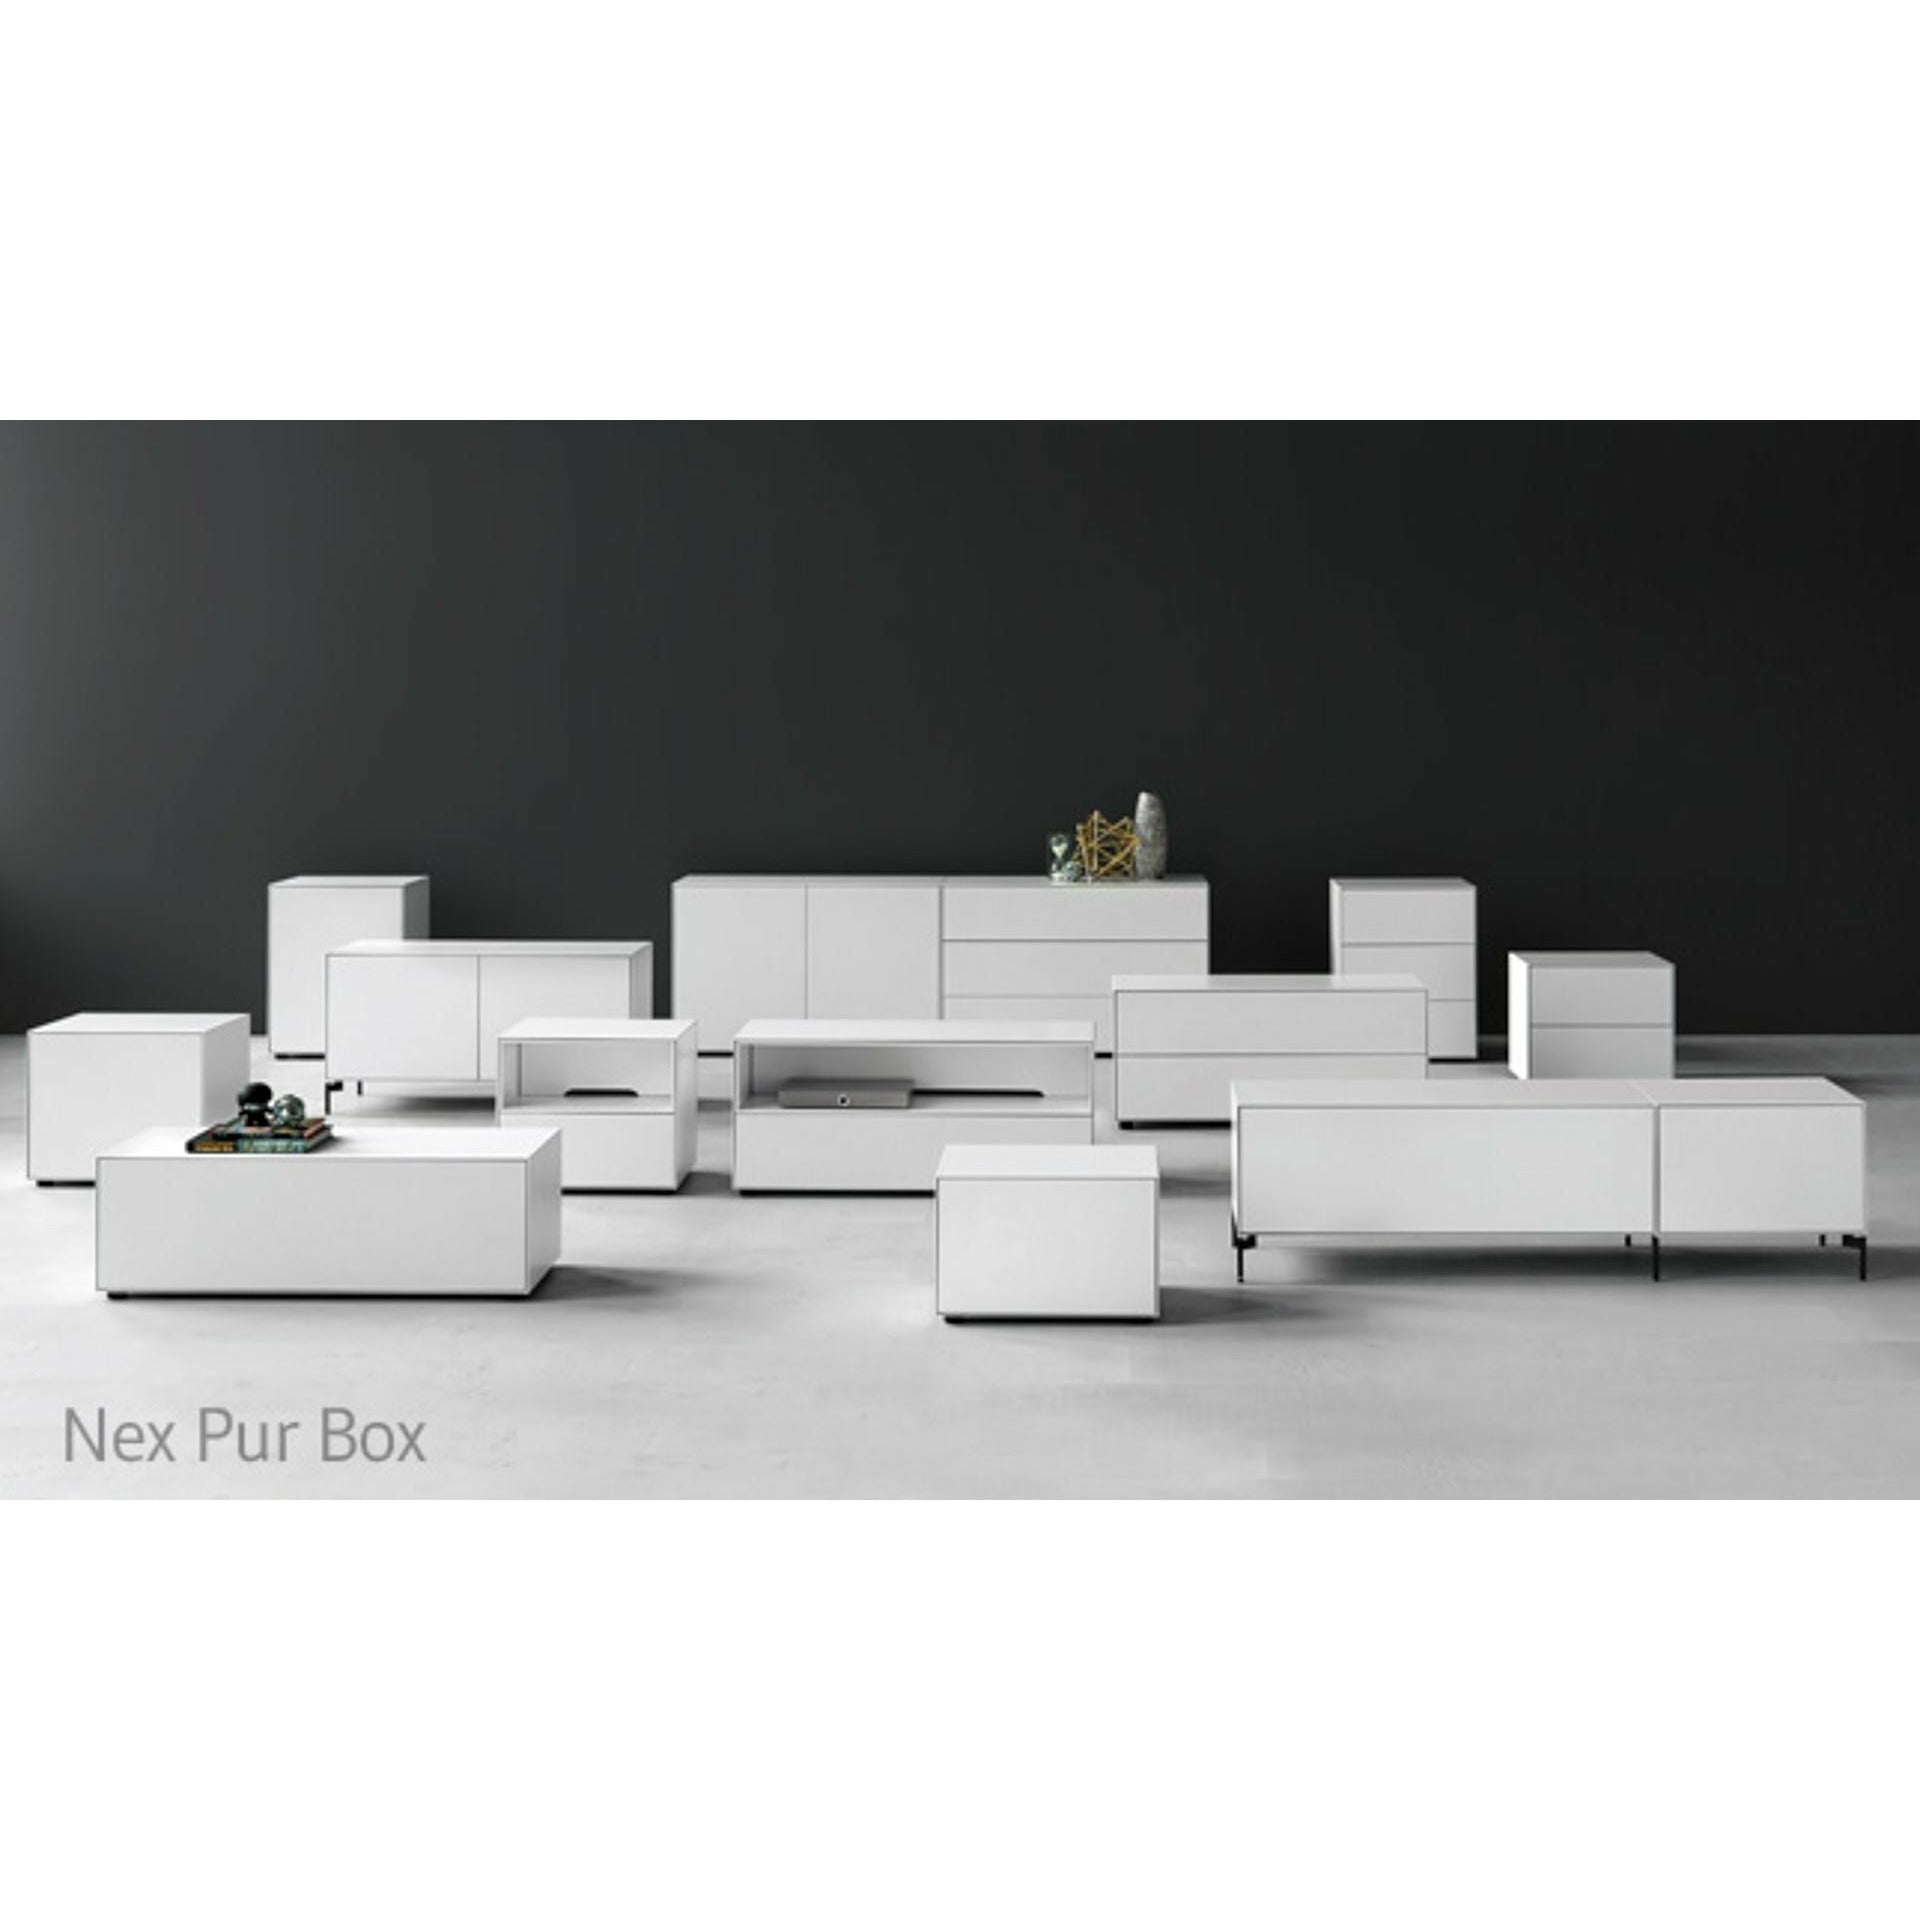 Piure Nex Pur Box Media Flap HX W 37,5x120 cm, 1 plank